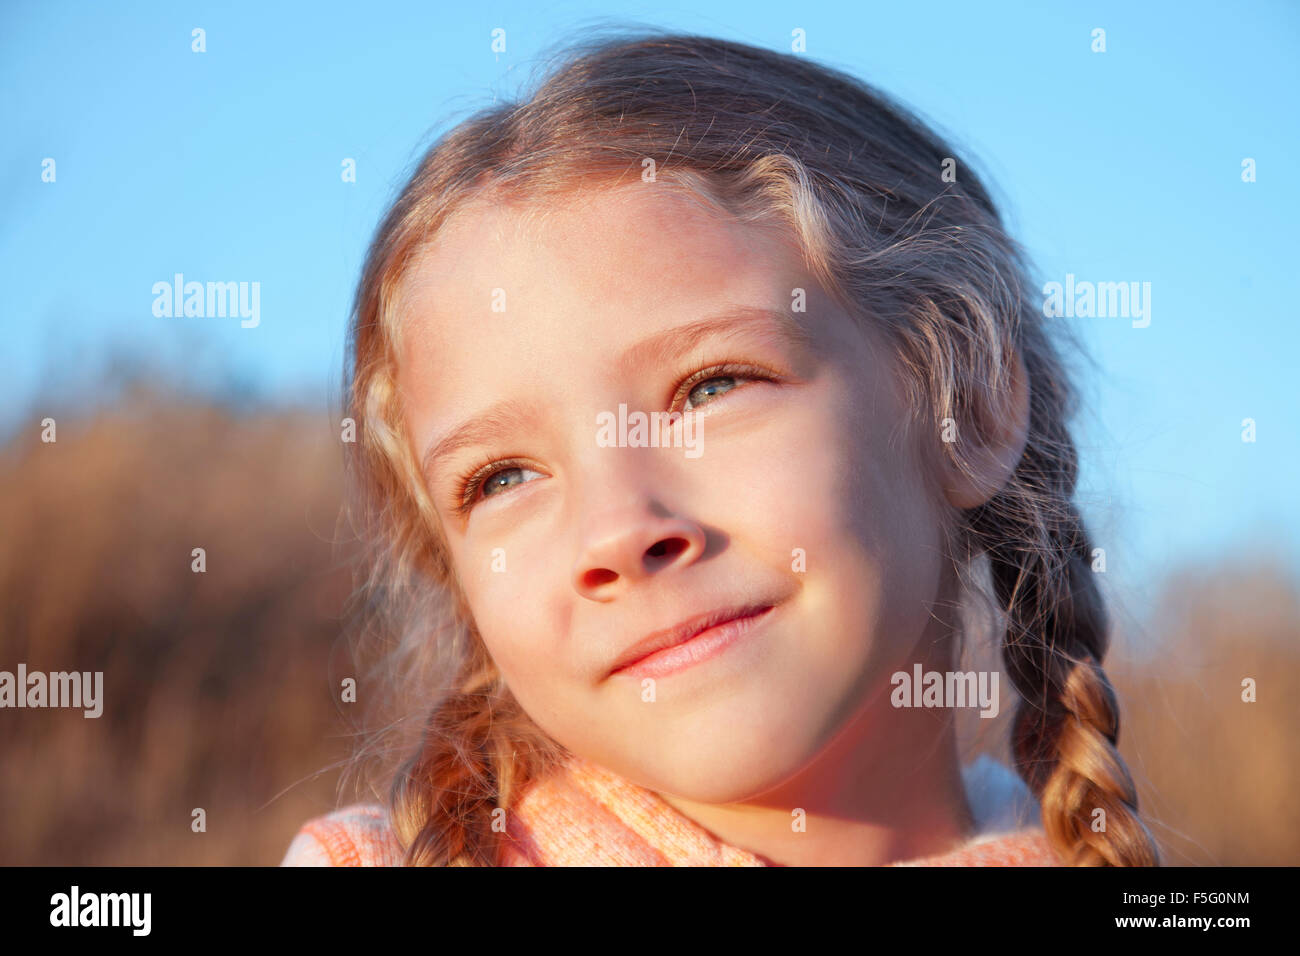 Portrait d'une jeune fille avec des tresses libre en plein air Banque D'Images